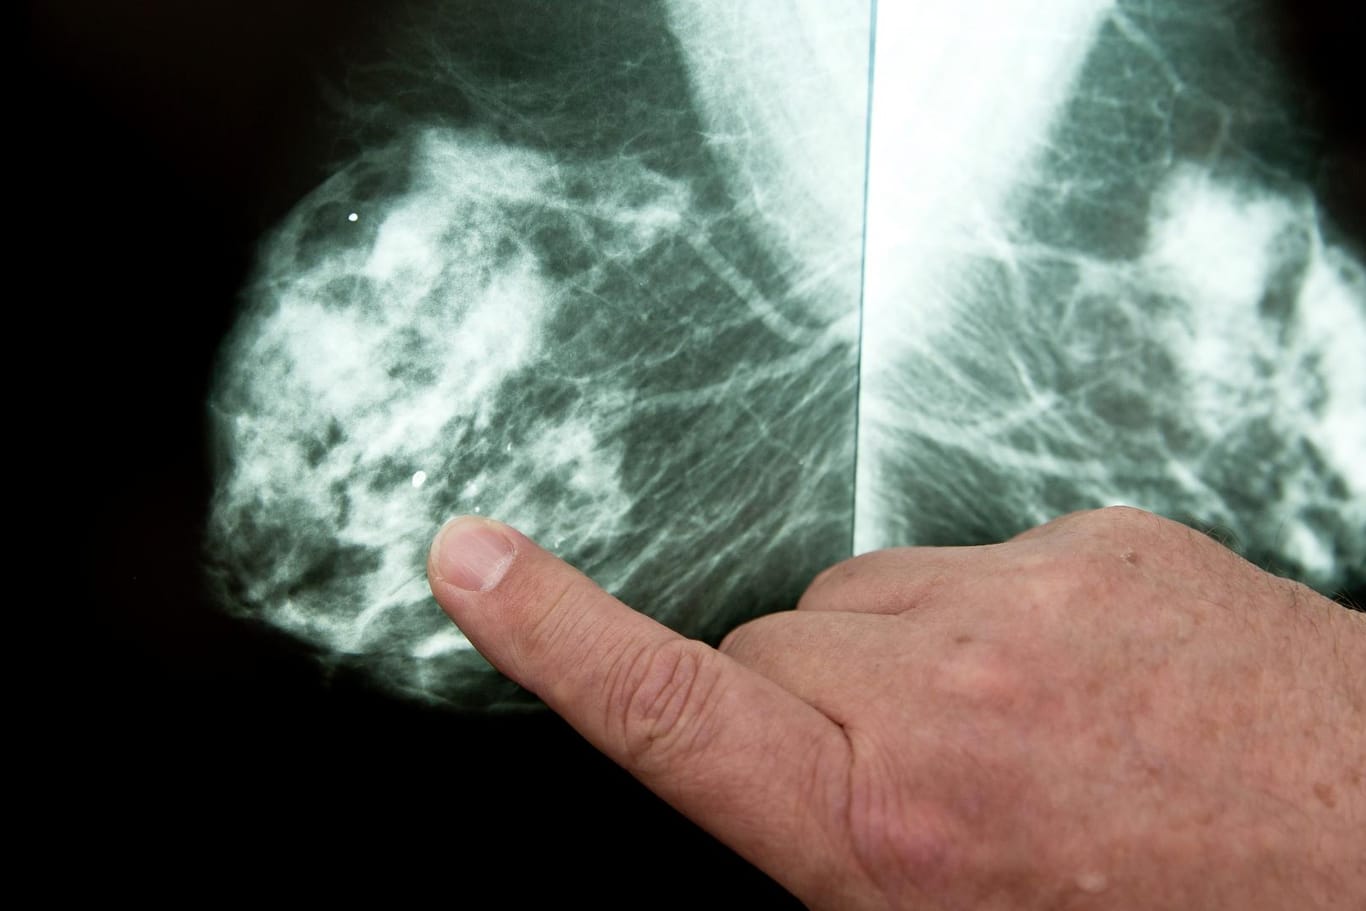 Mammografie: Durch Screening-Programme wird Brustkrebs früher entdeckt - und häufiger die Diagnose DCIS gestellt.